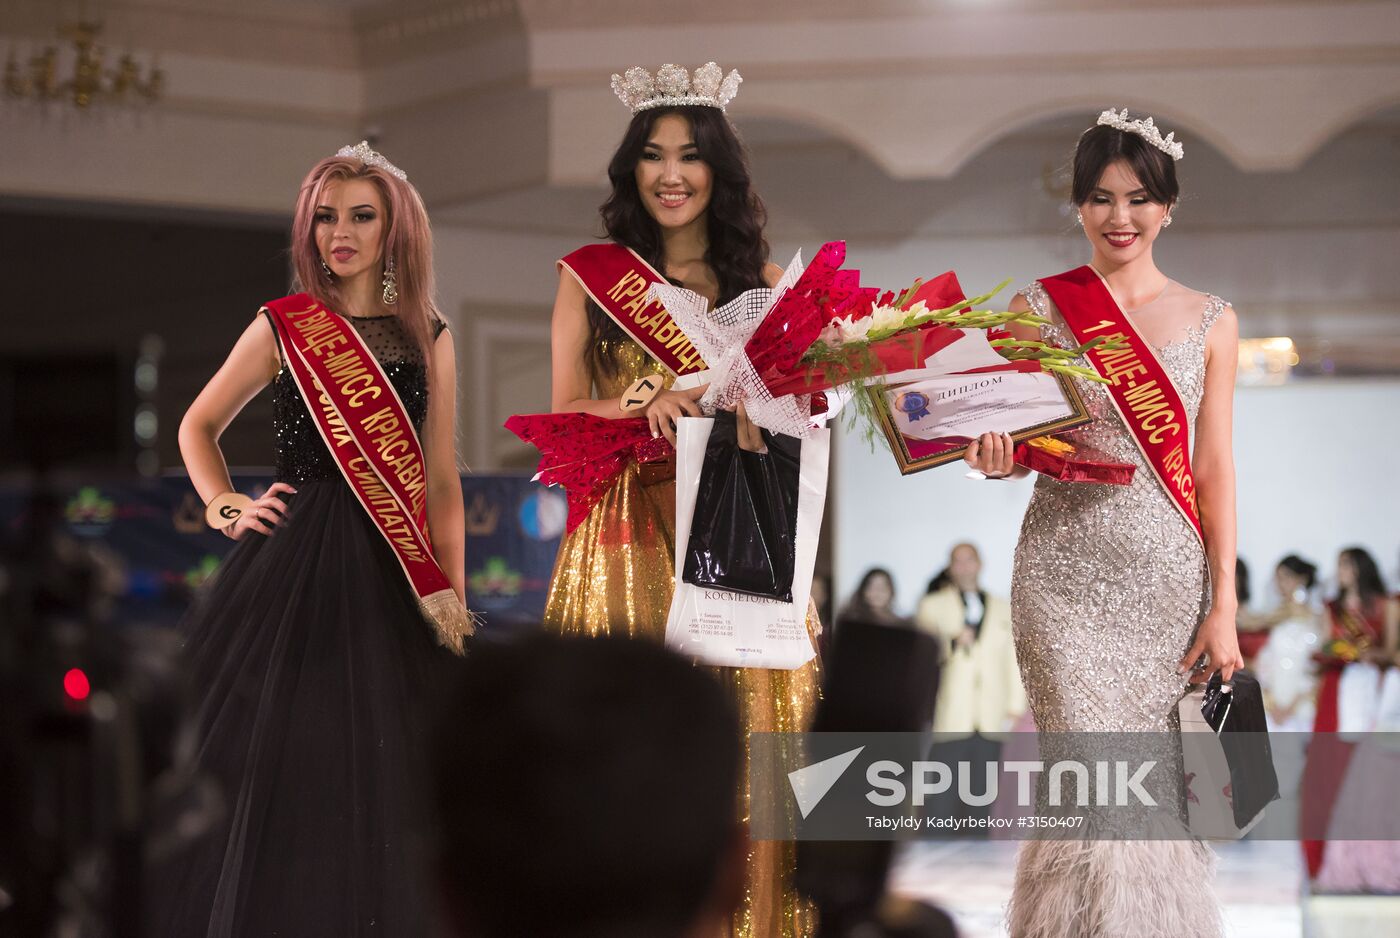 Beauty of Kyrgyzstan beauty pageant in Bishkek